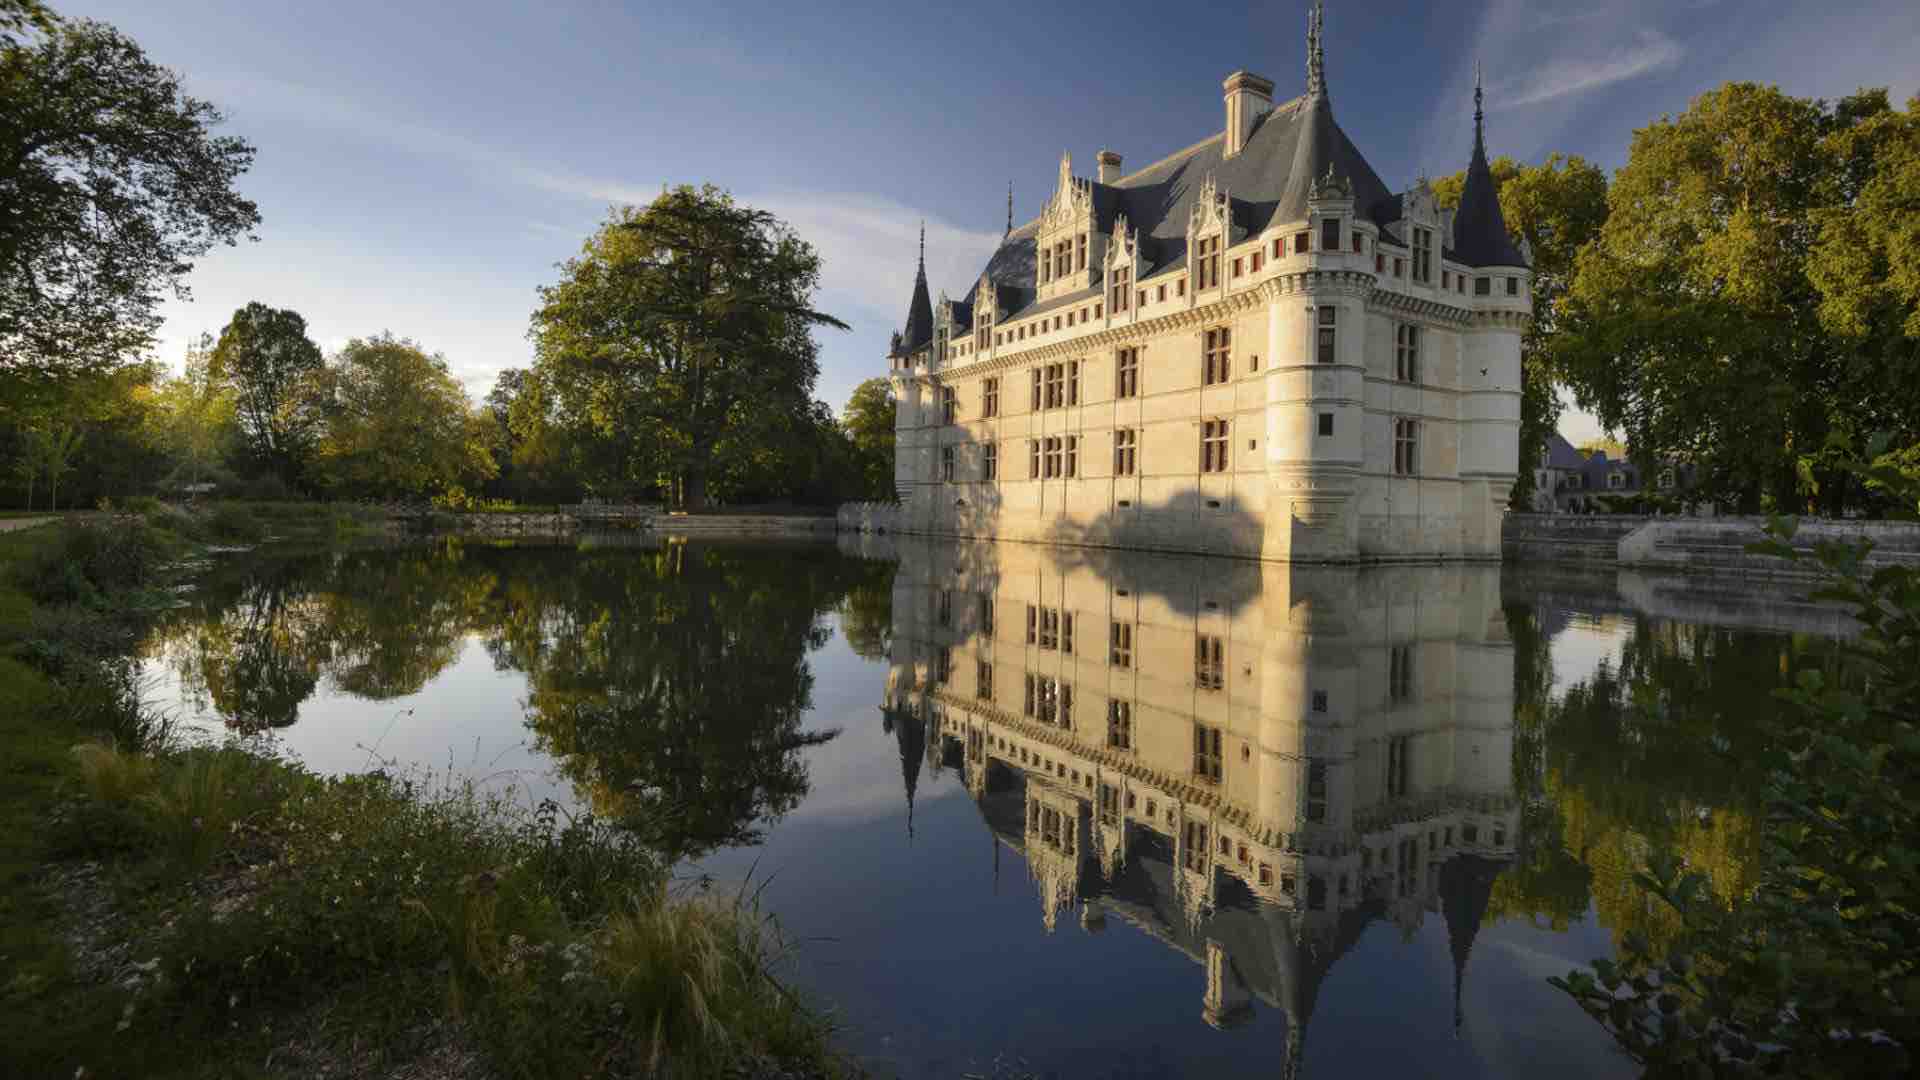 Visiter les châteaux de la Loire